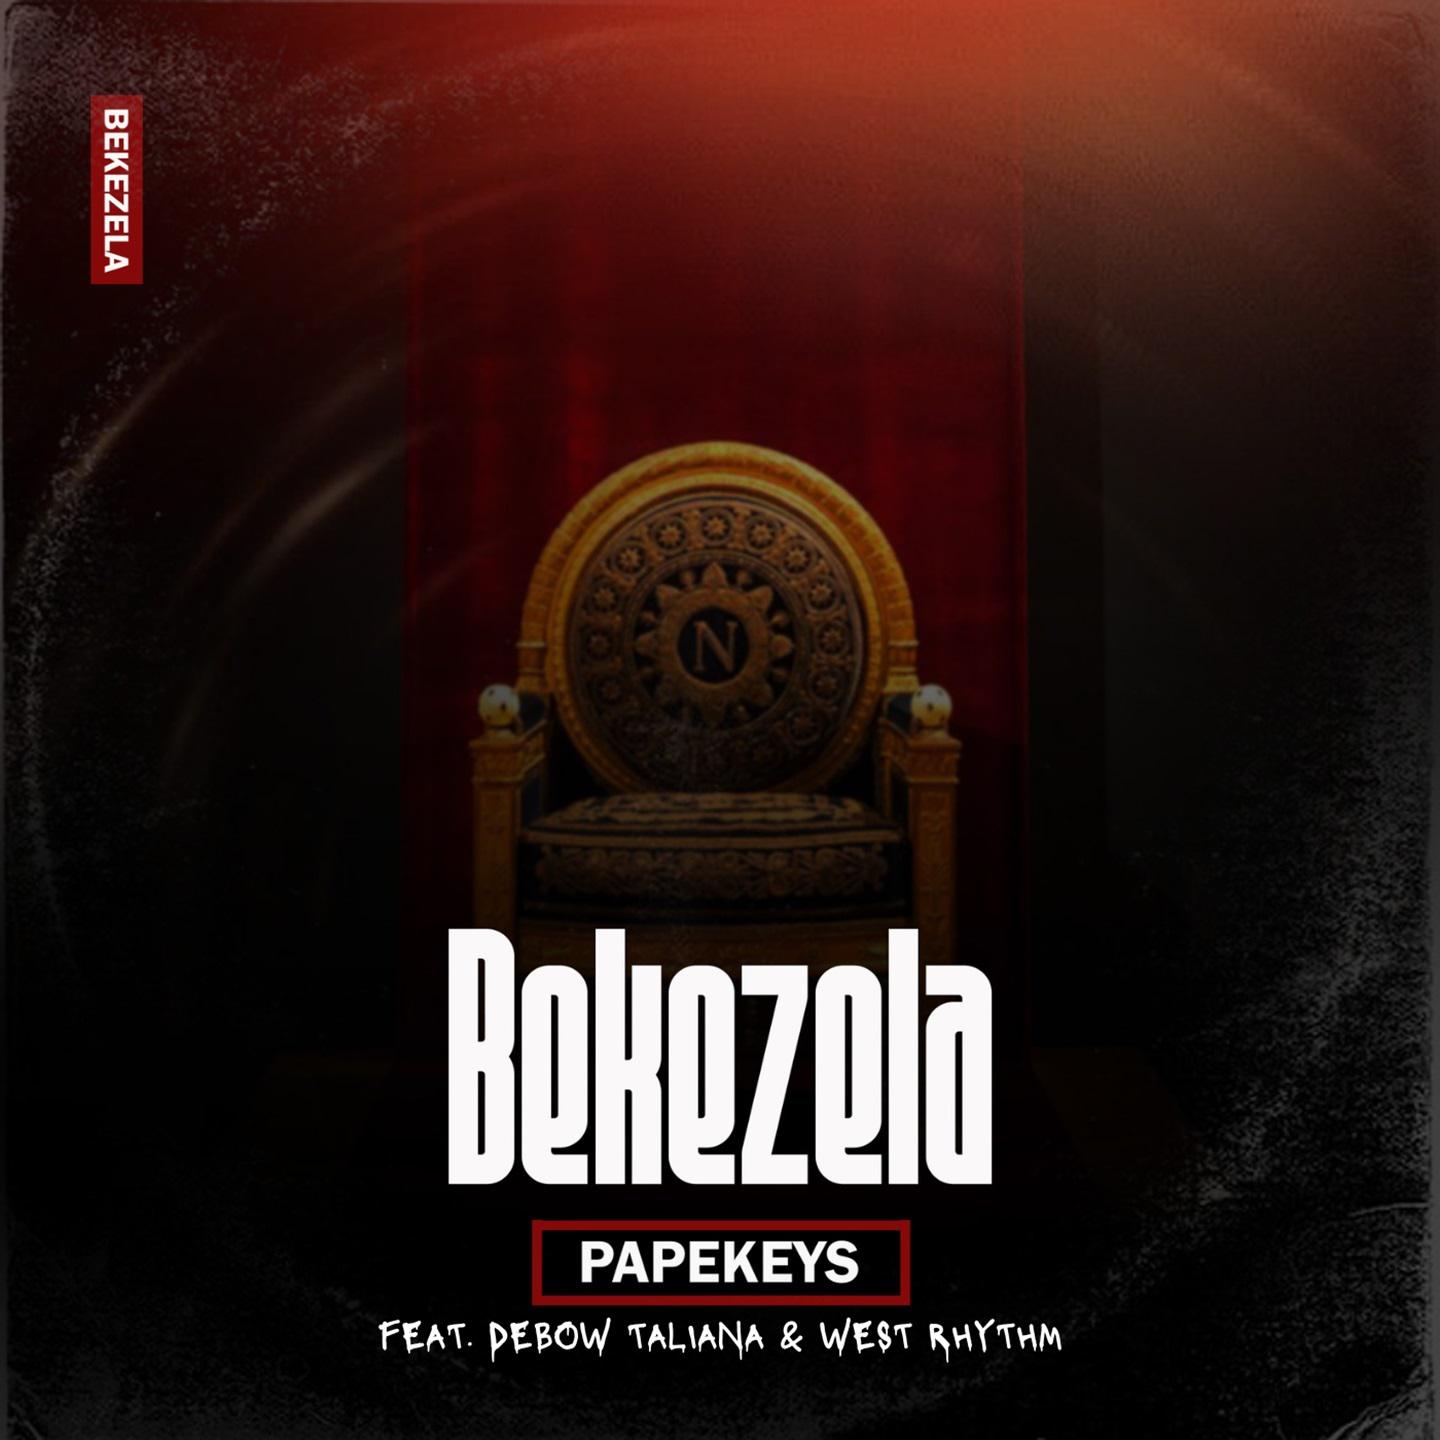 Постер альбома Bekezela